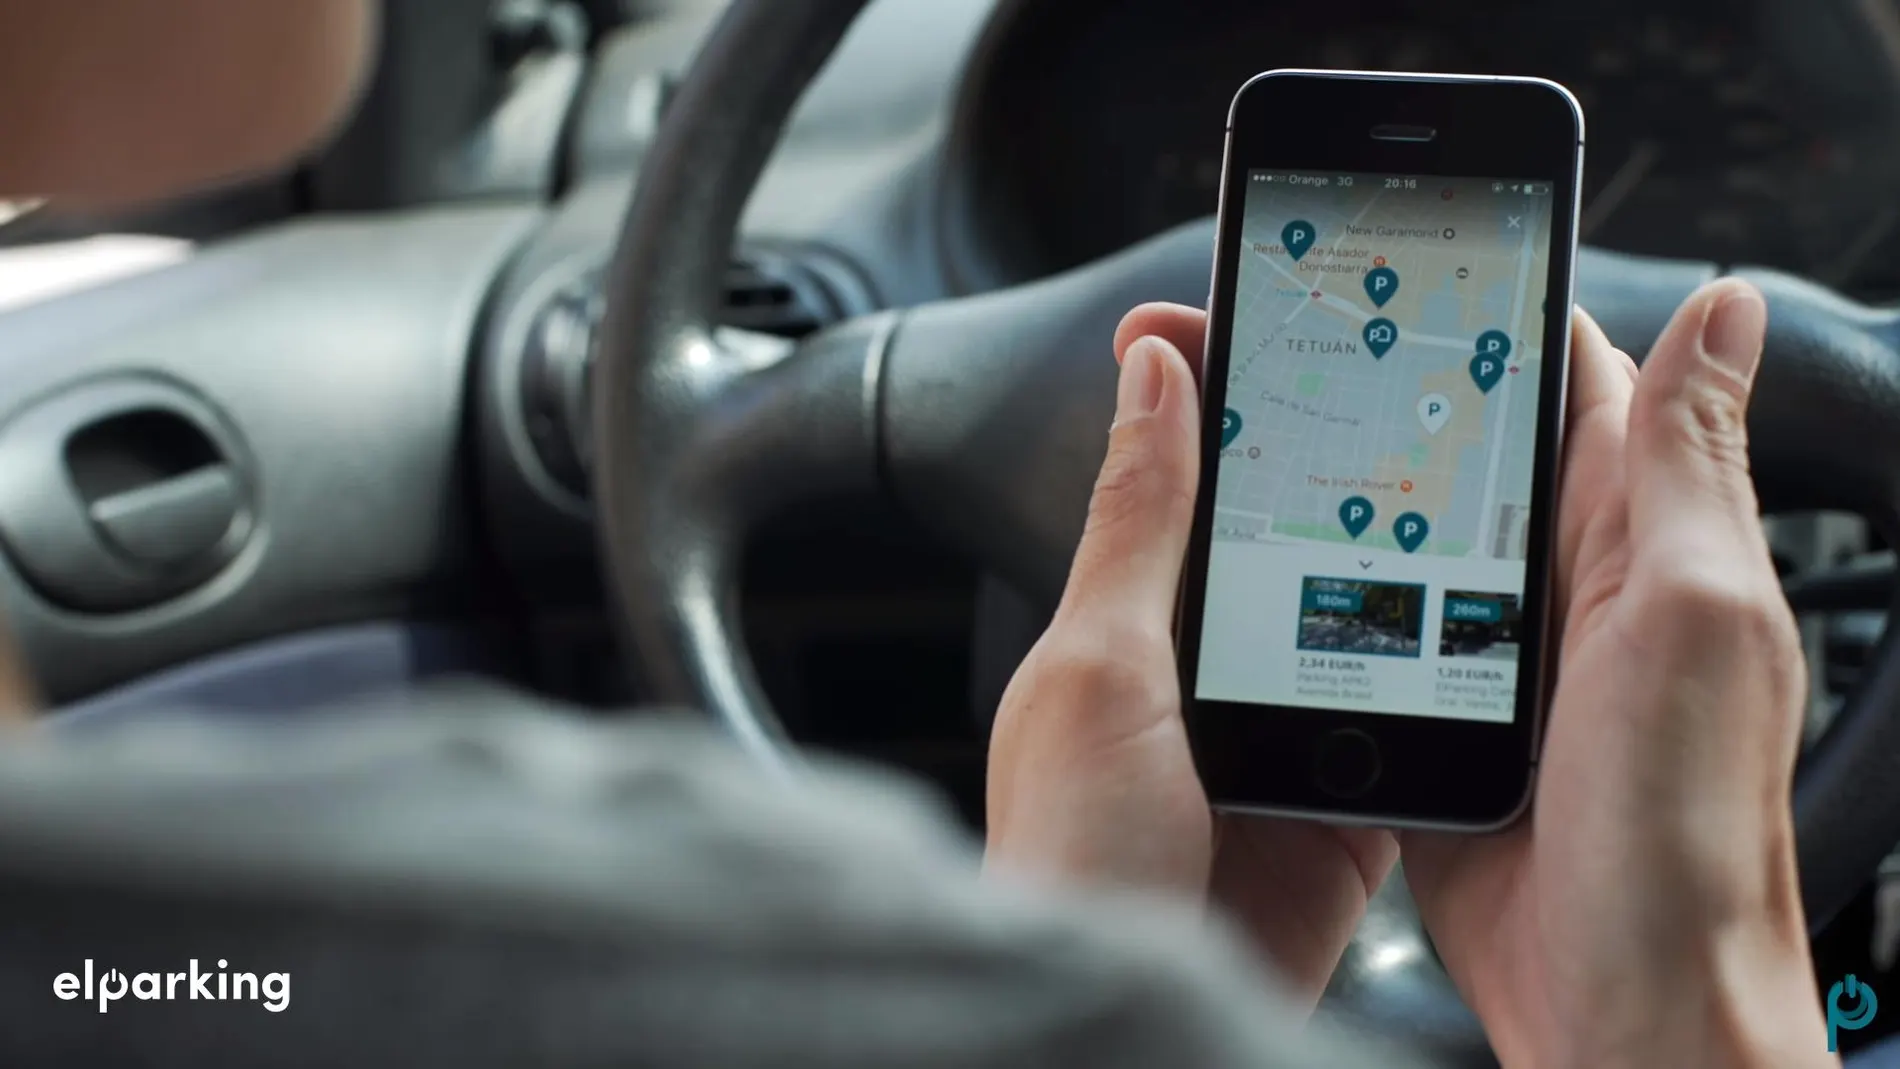 Parkingdoor se gestiona a través de una app